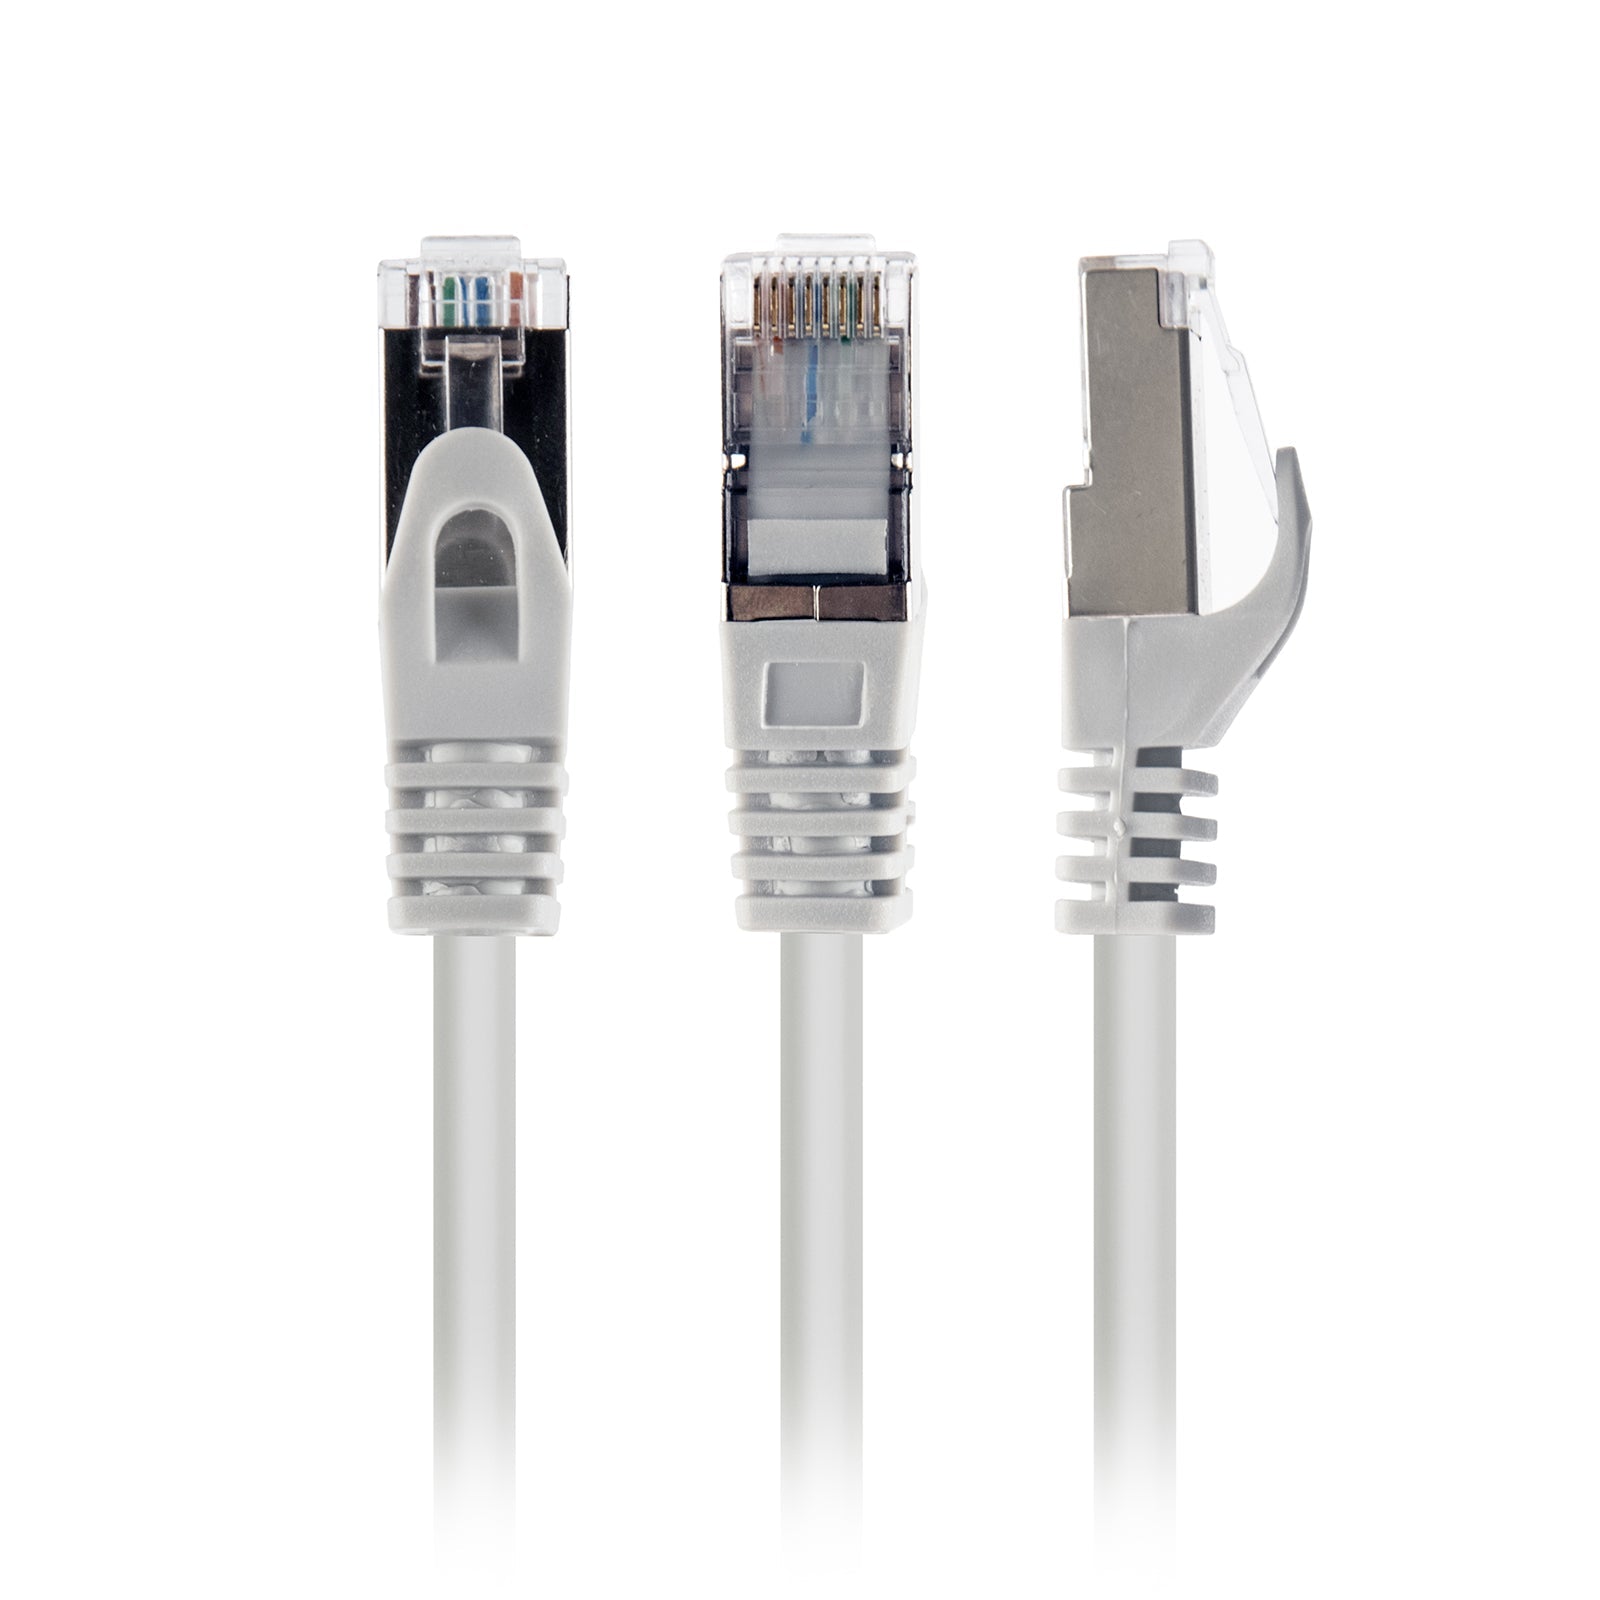 Câble Ethernet RJ45 - CAT 6 - Gris - 2m